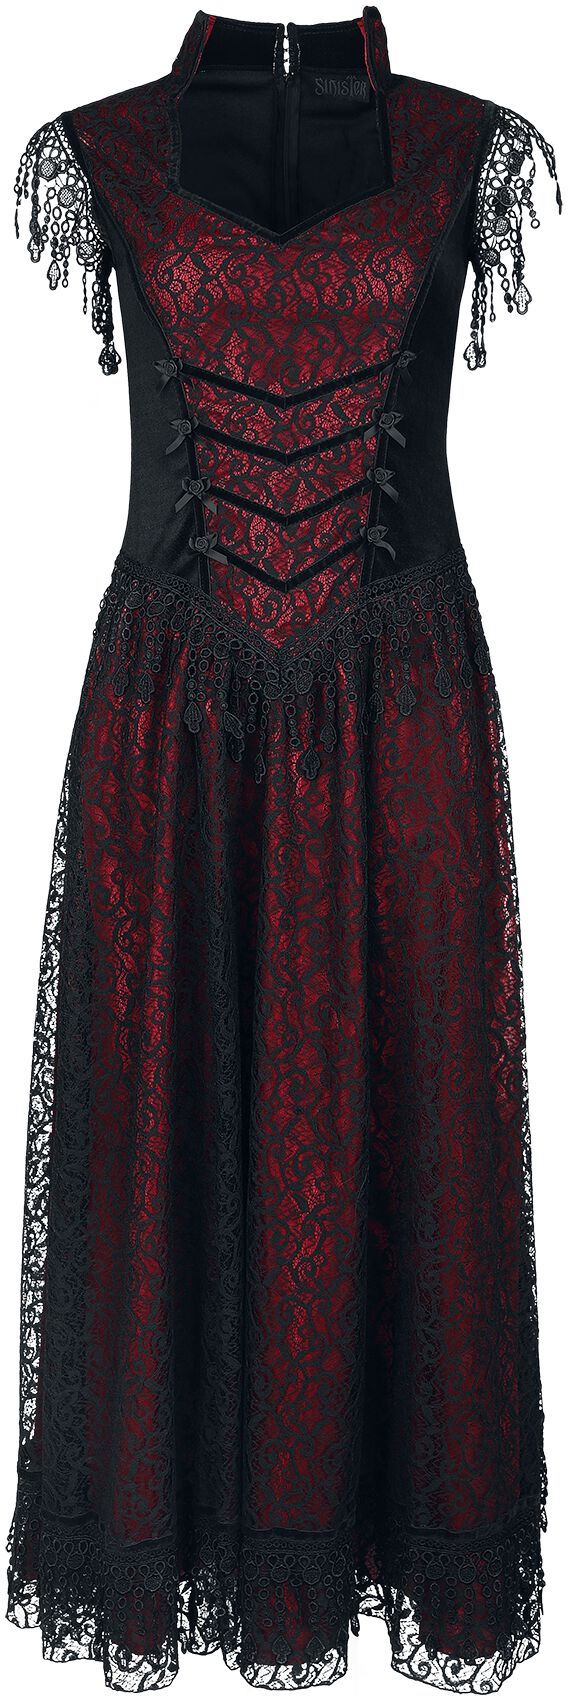 Sinister Gothic - Mittelalter Kleid lang - Gothic Dress - S bis XXL - für Damen - Größe XL - schwarz/rot